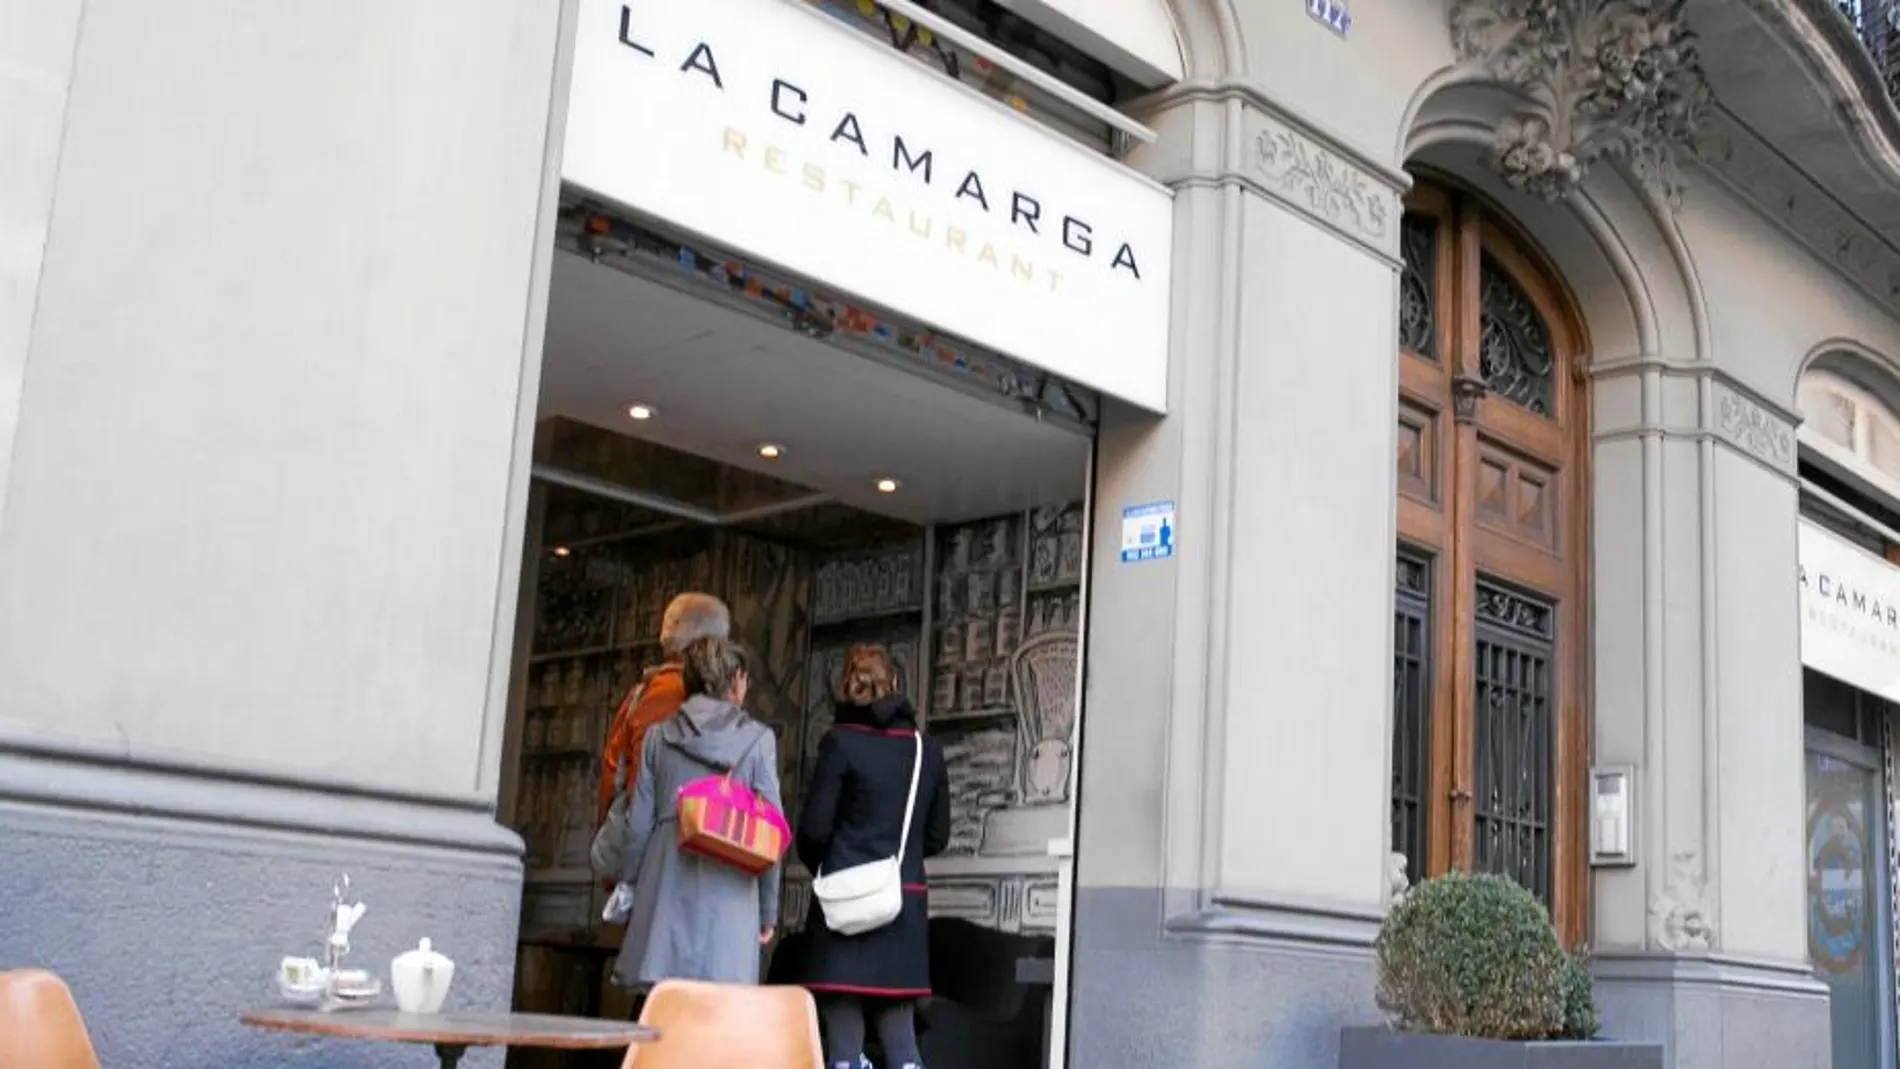 El restaurante La Camarga, protagonista de uno de los mayores casos de espionaje en España